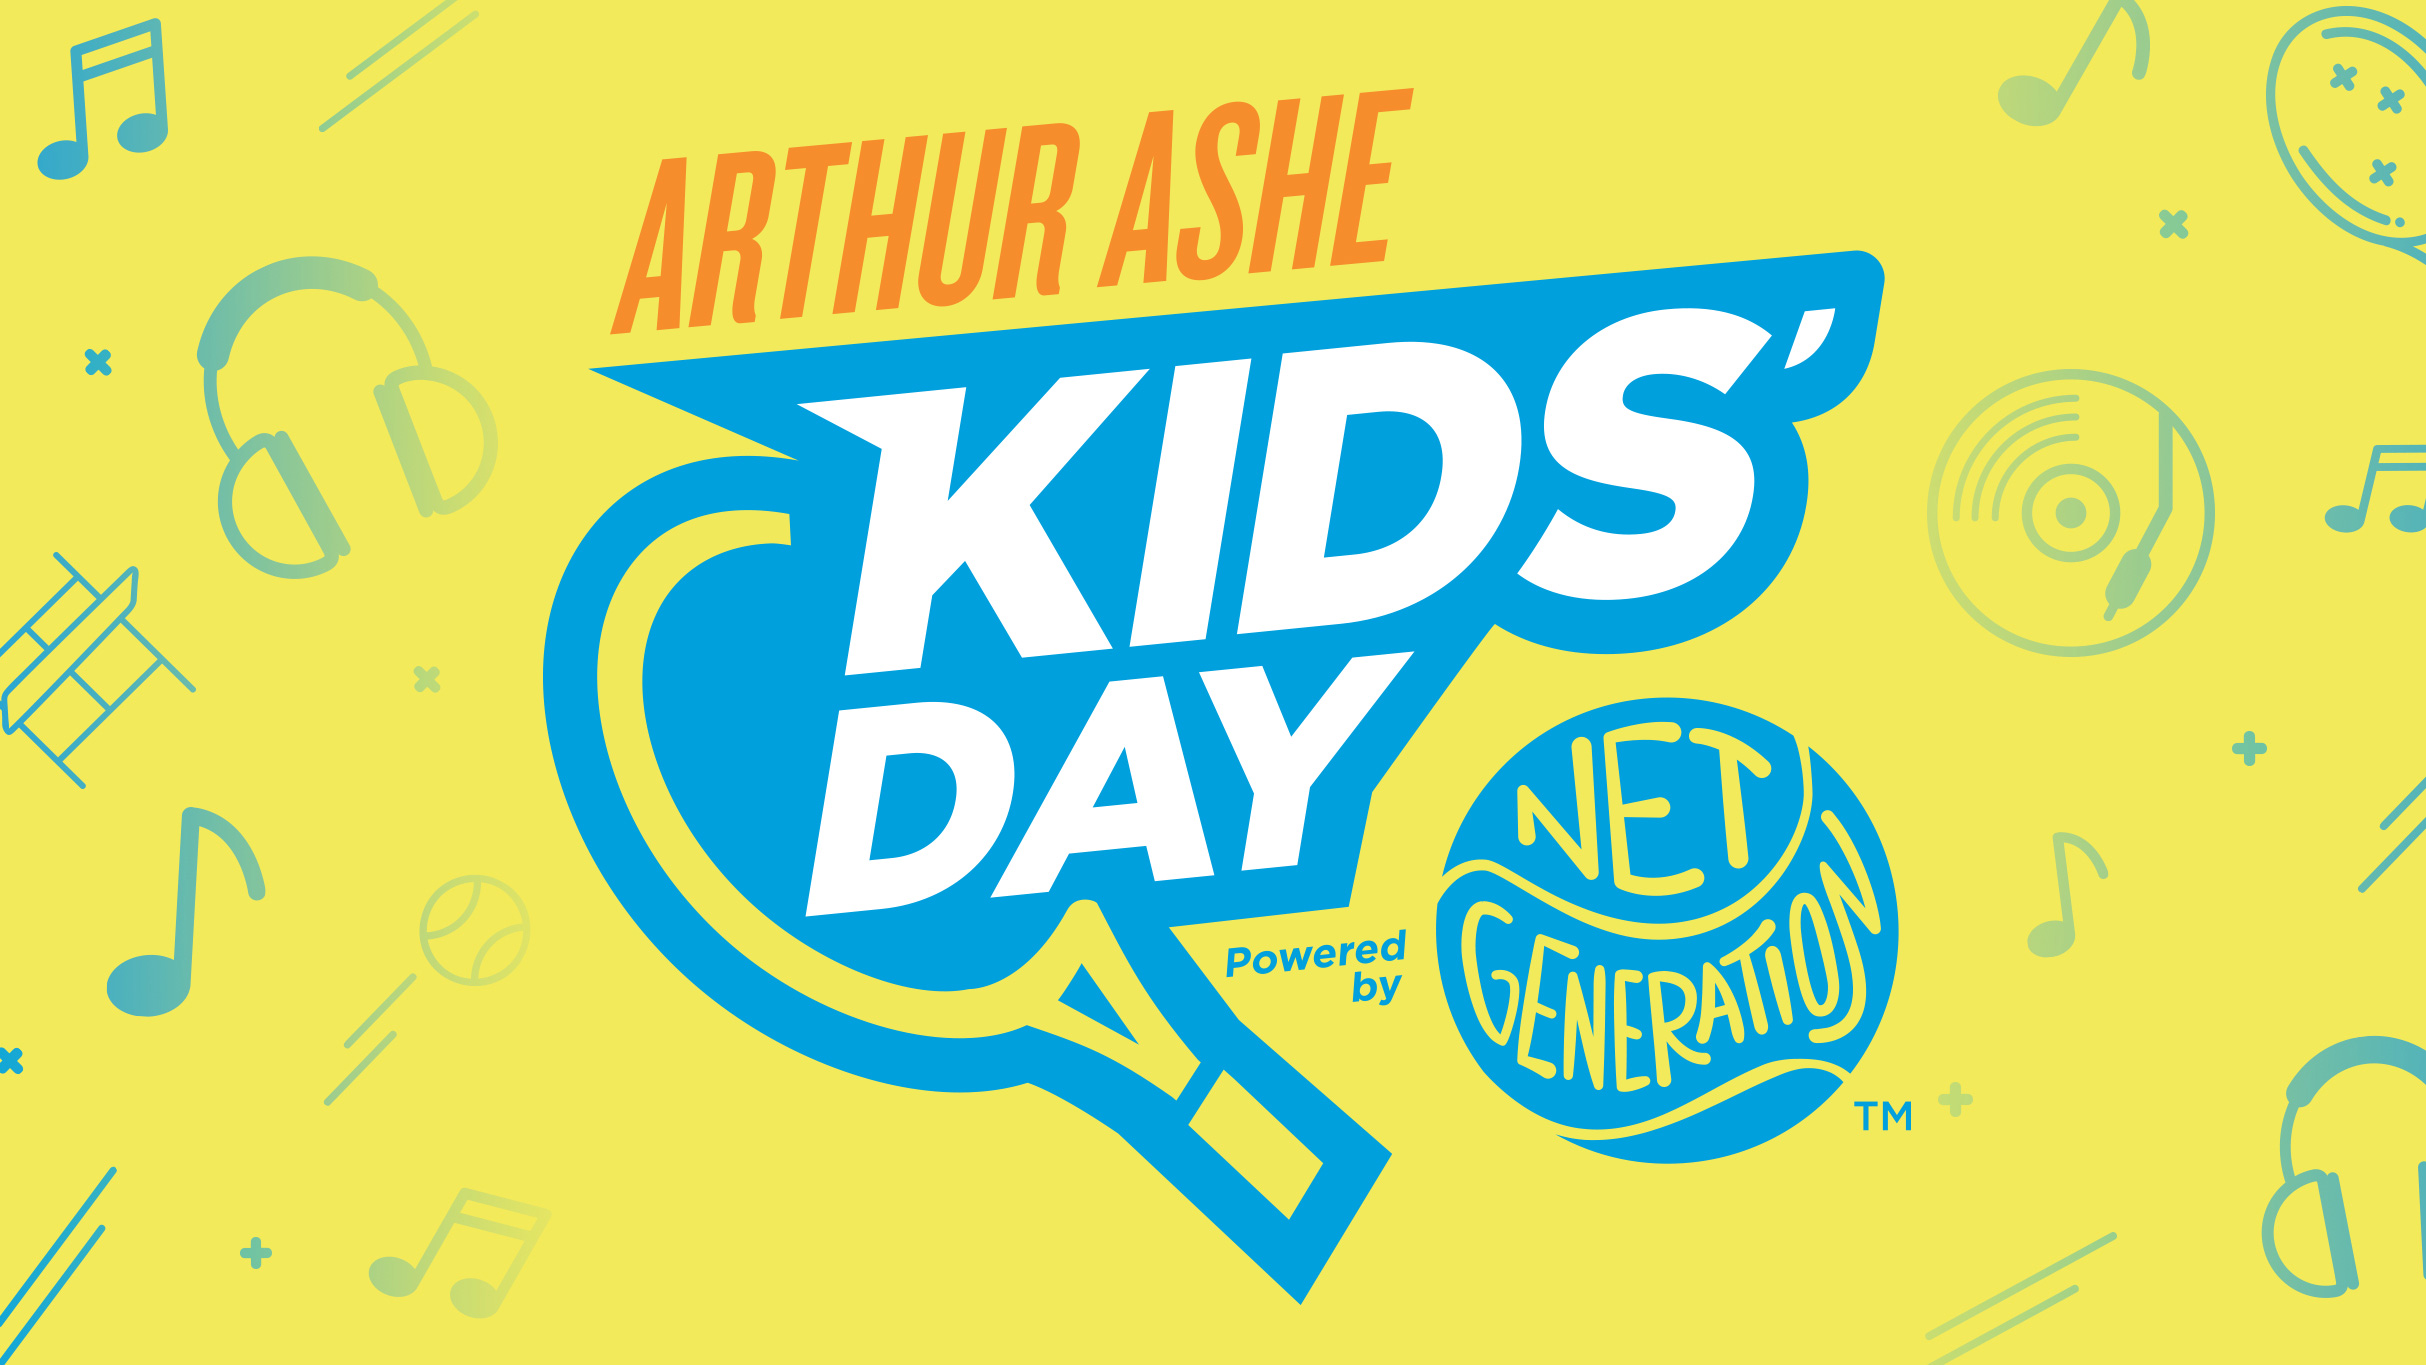 US Open Arthur Ashe Kids' Day